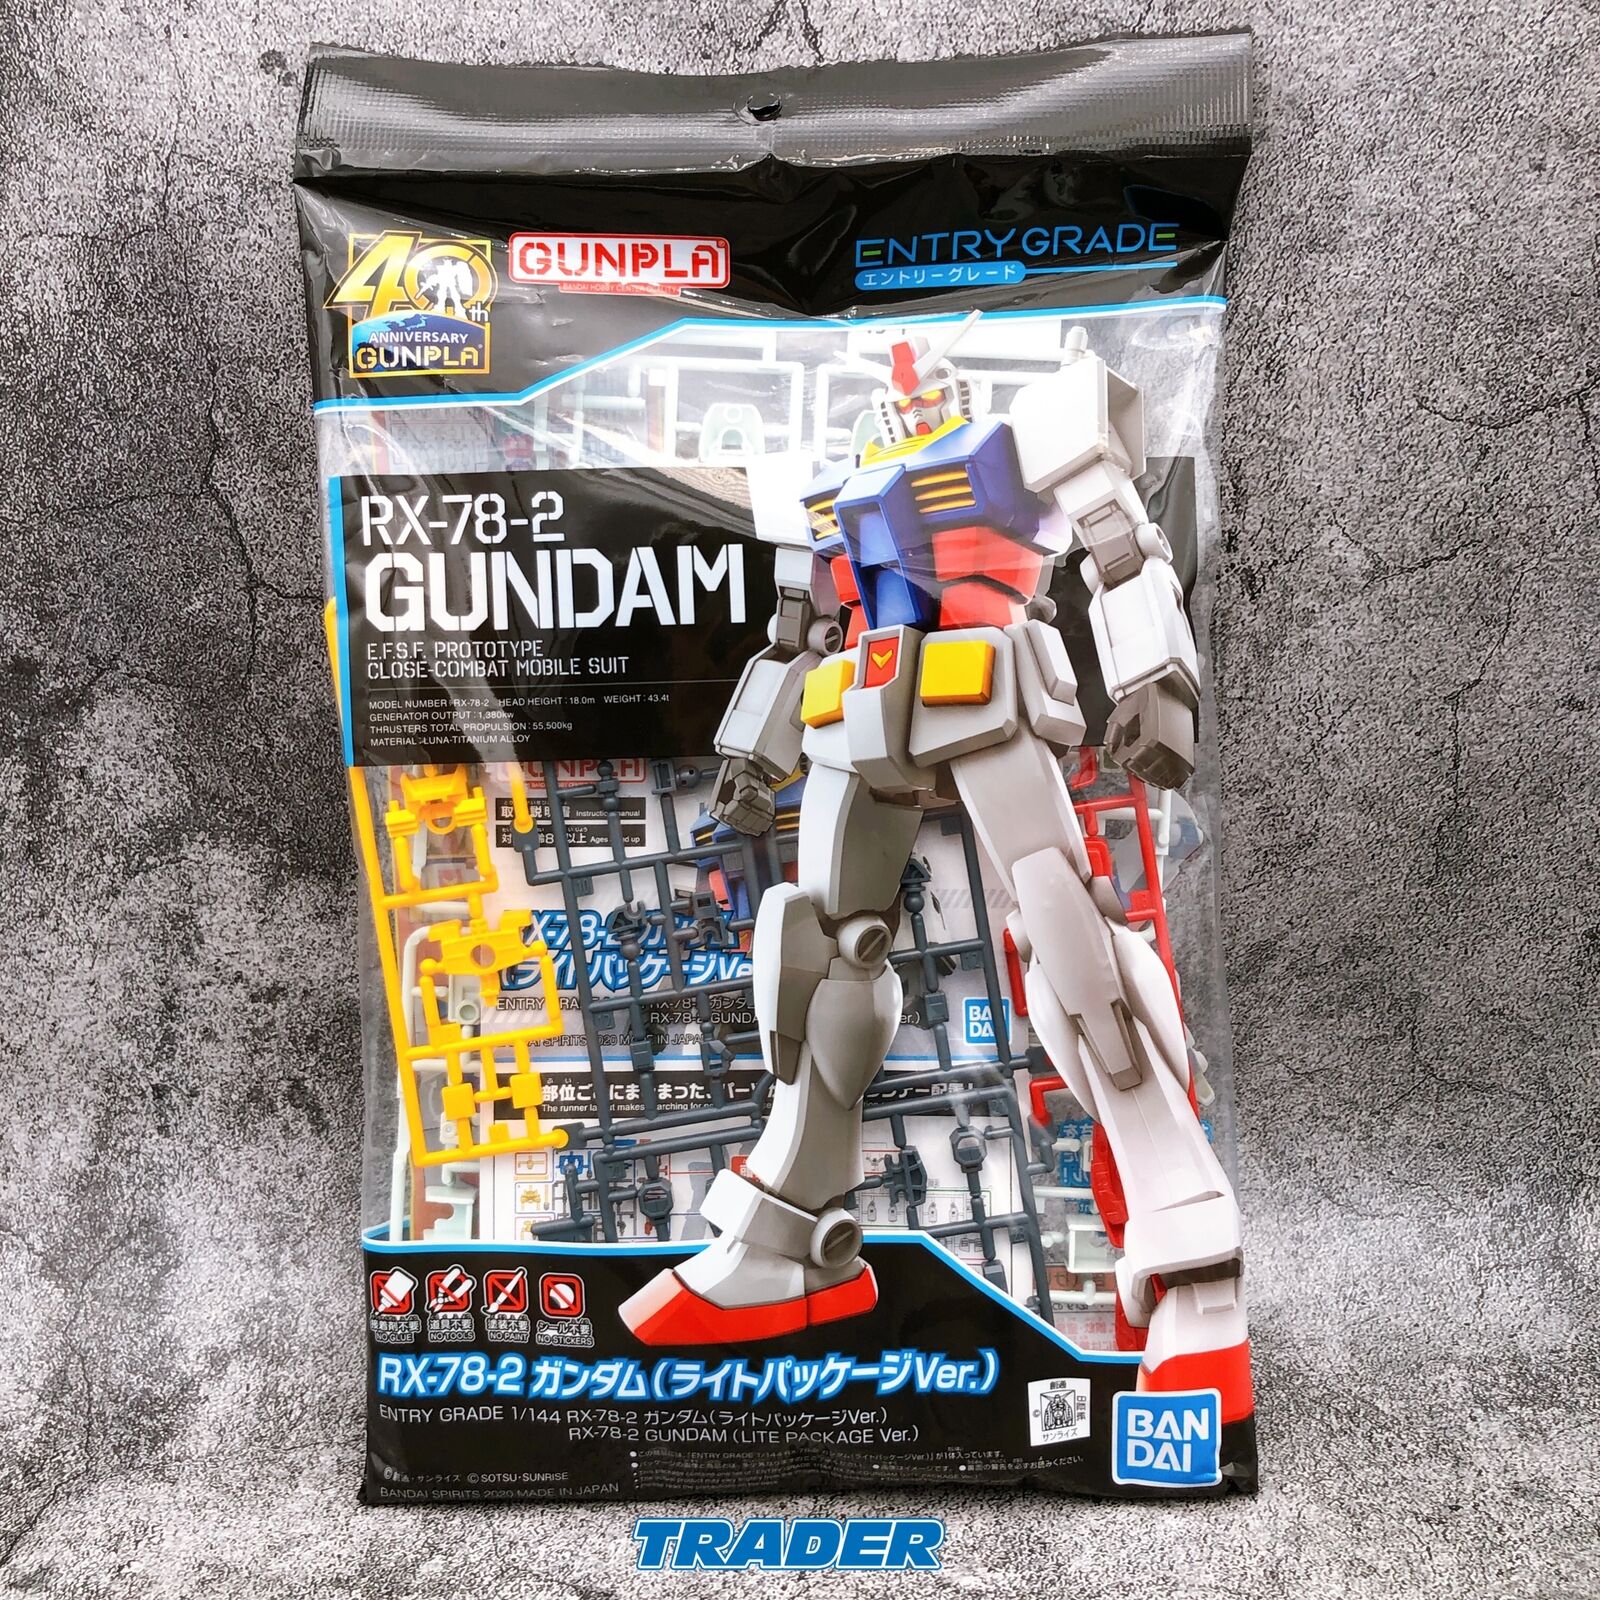 Mobile Suit GUNDAM RX-78-2 Light Package Ver Model Kit Entry Grade Gunpla